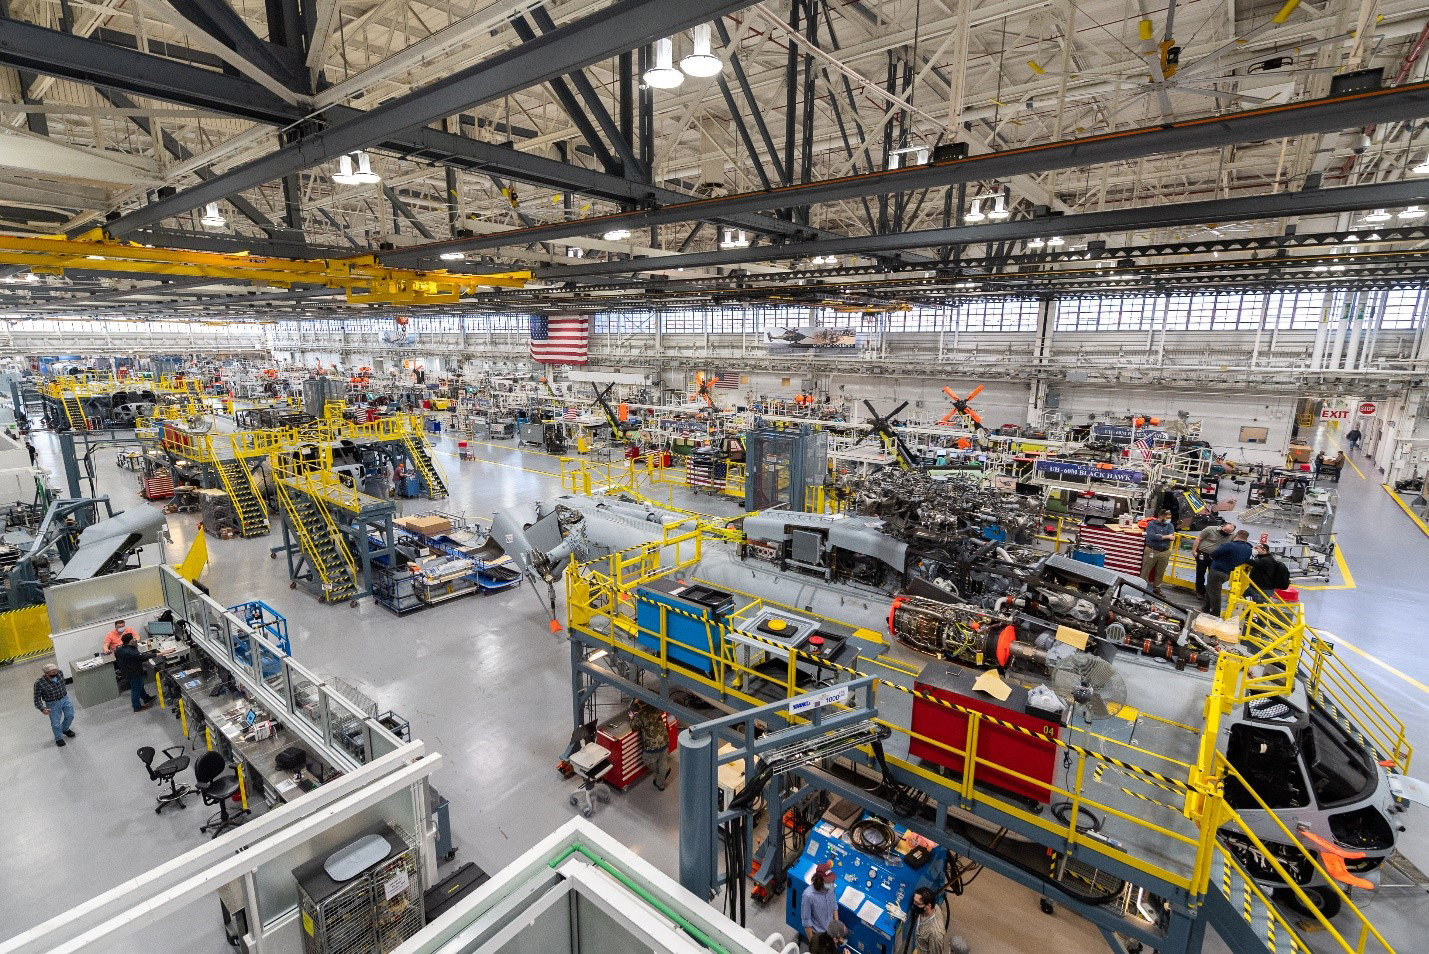 西科斯基公司斯特拉特福德康涅狄格州工厂的生产线俯视图。图片由洛克希德·马丁公司提供。